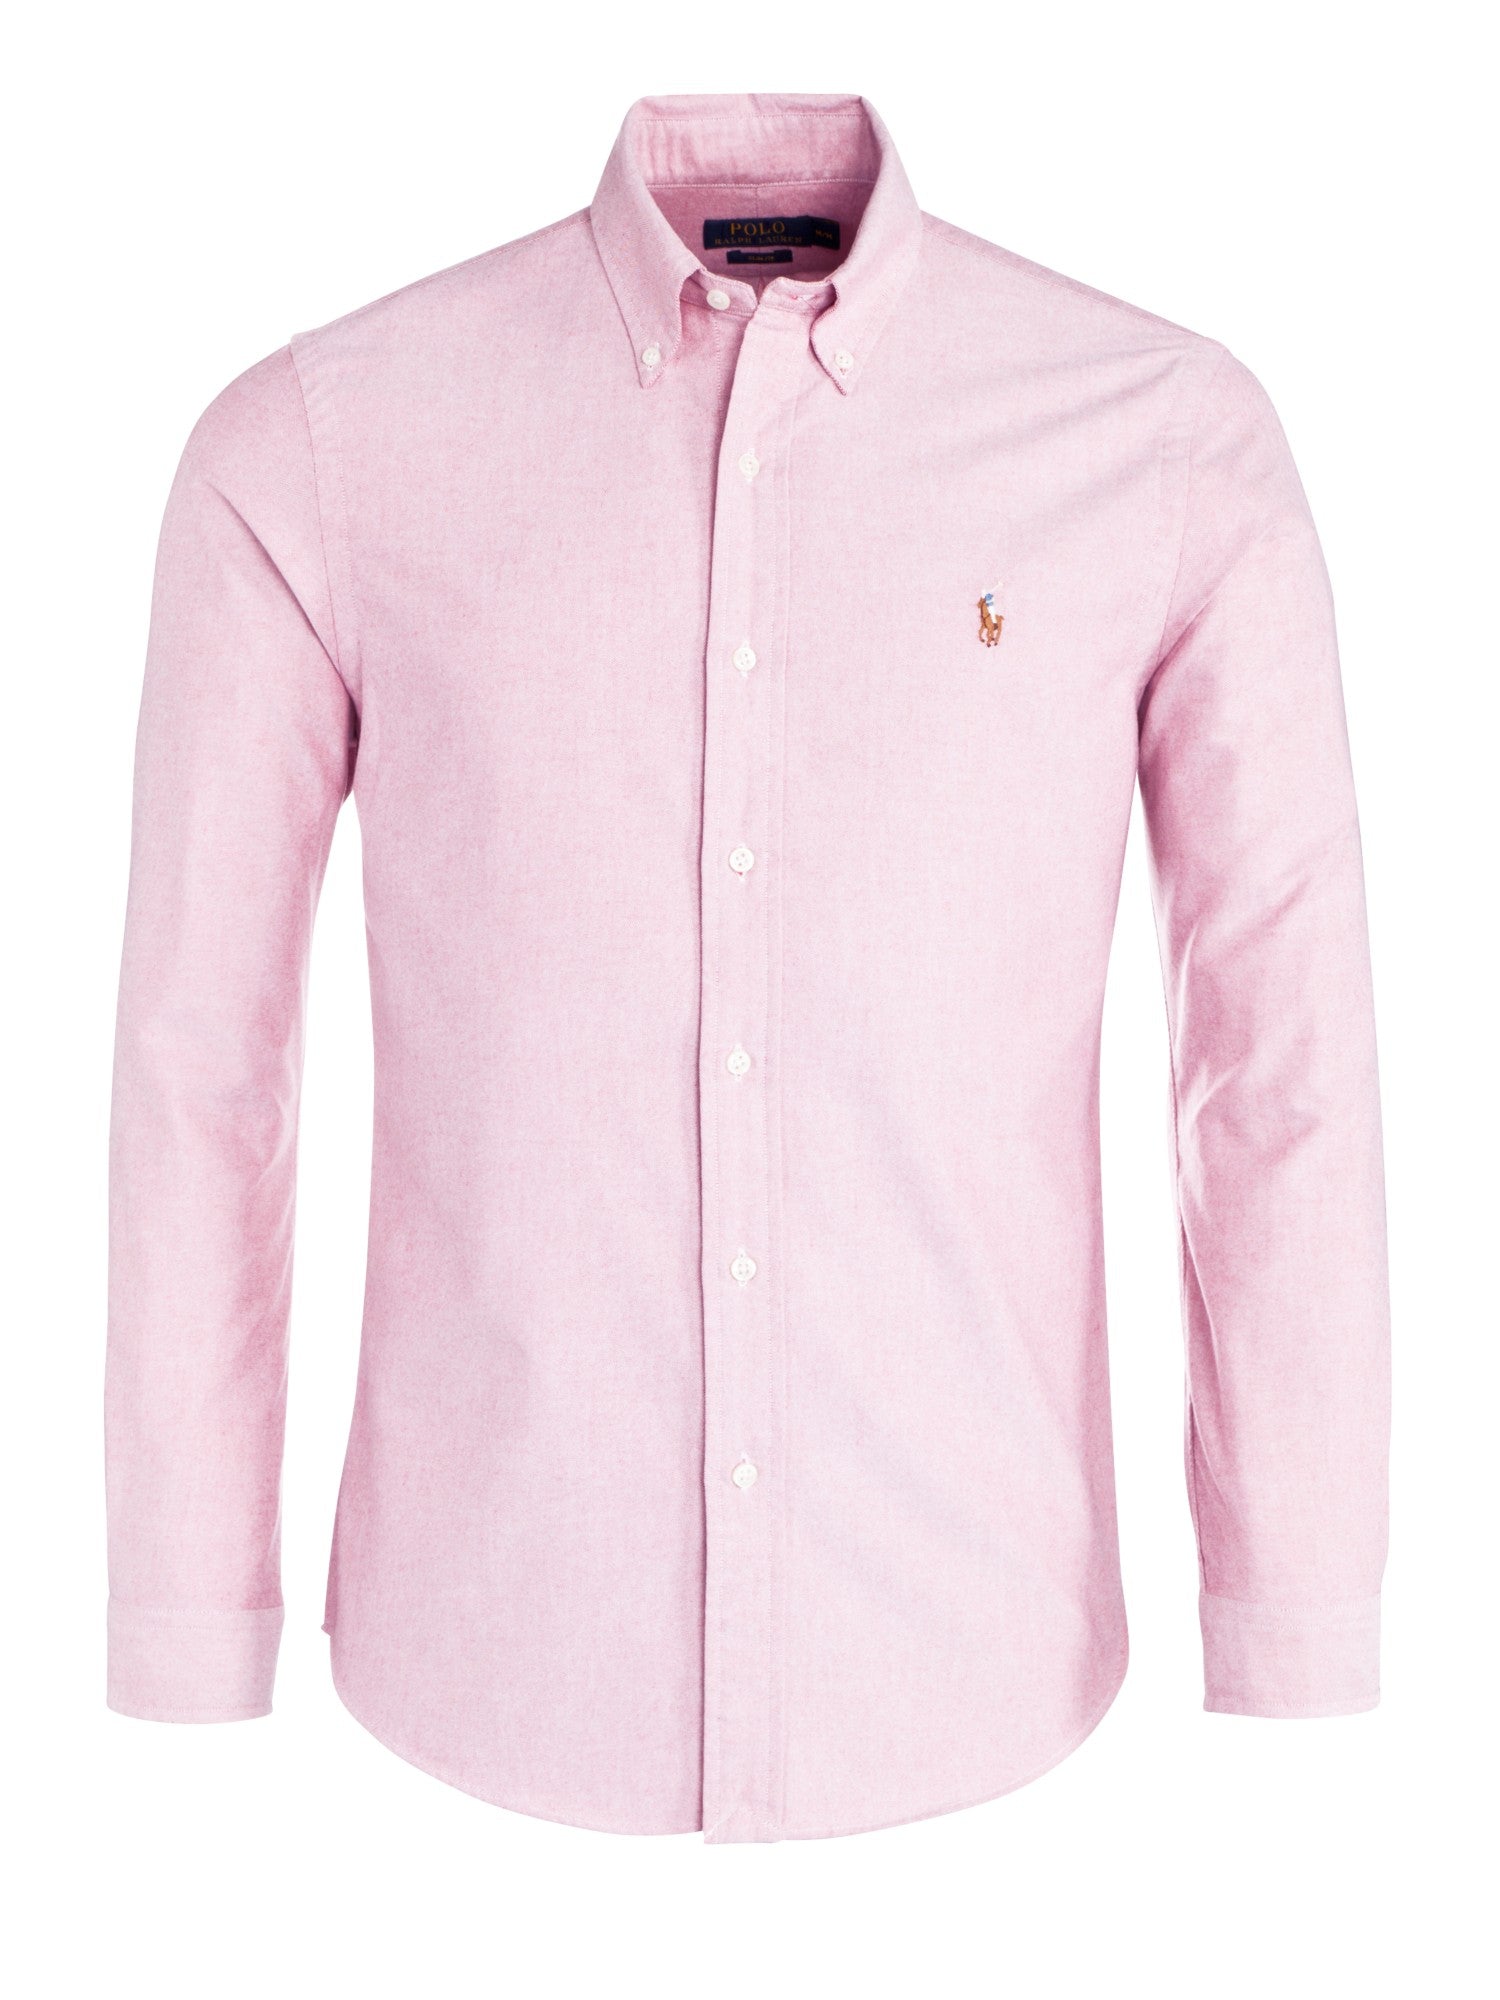 ralph lauren oxford shirt pink